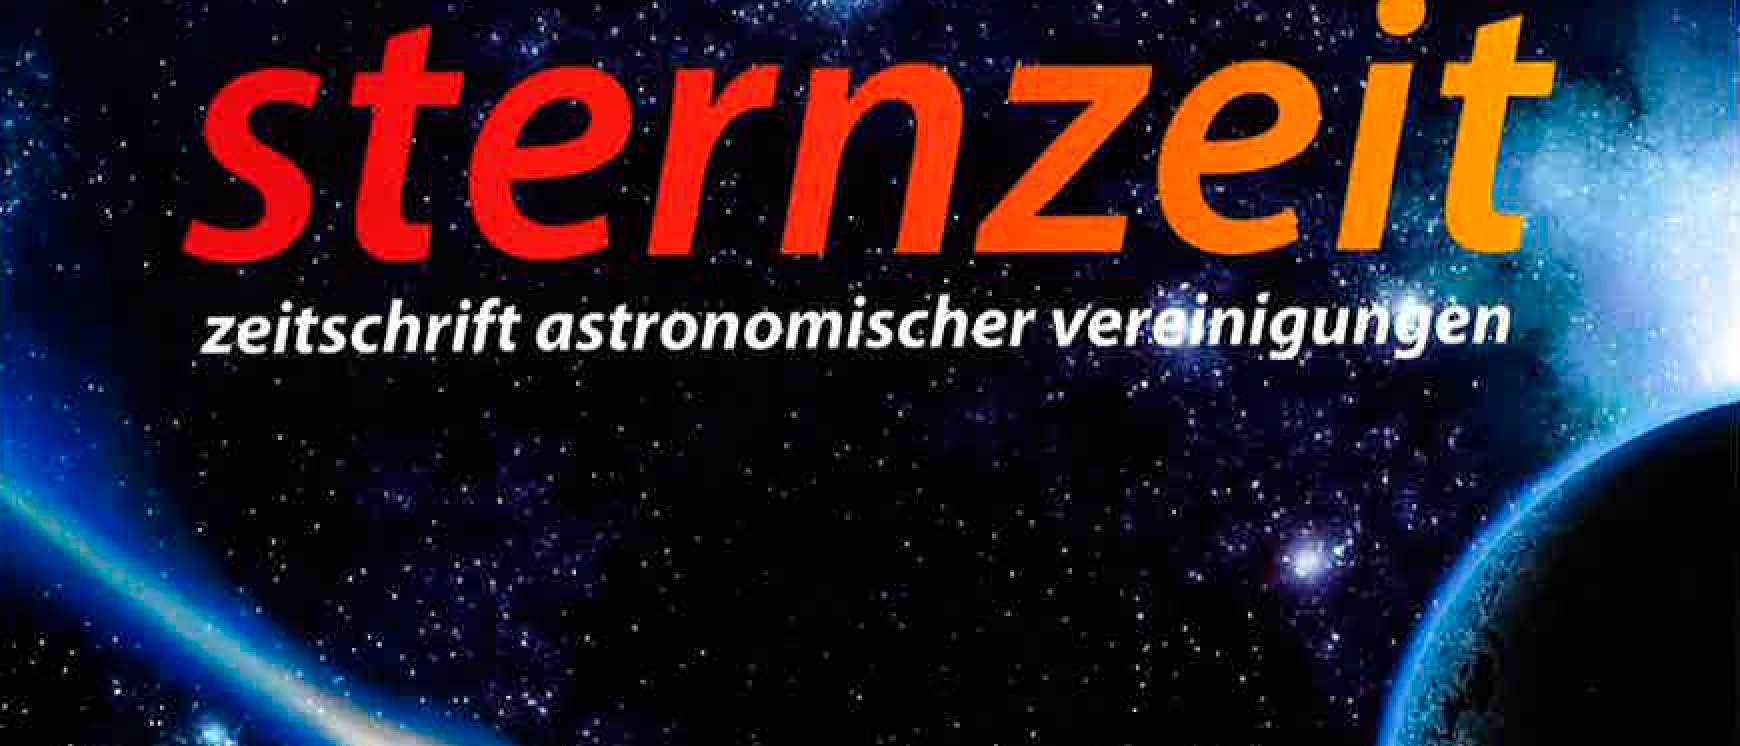 Titelzeile der Zeitschrift Sternzeit